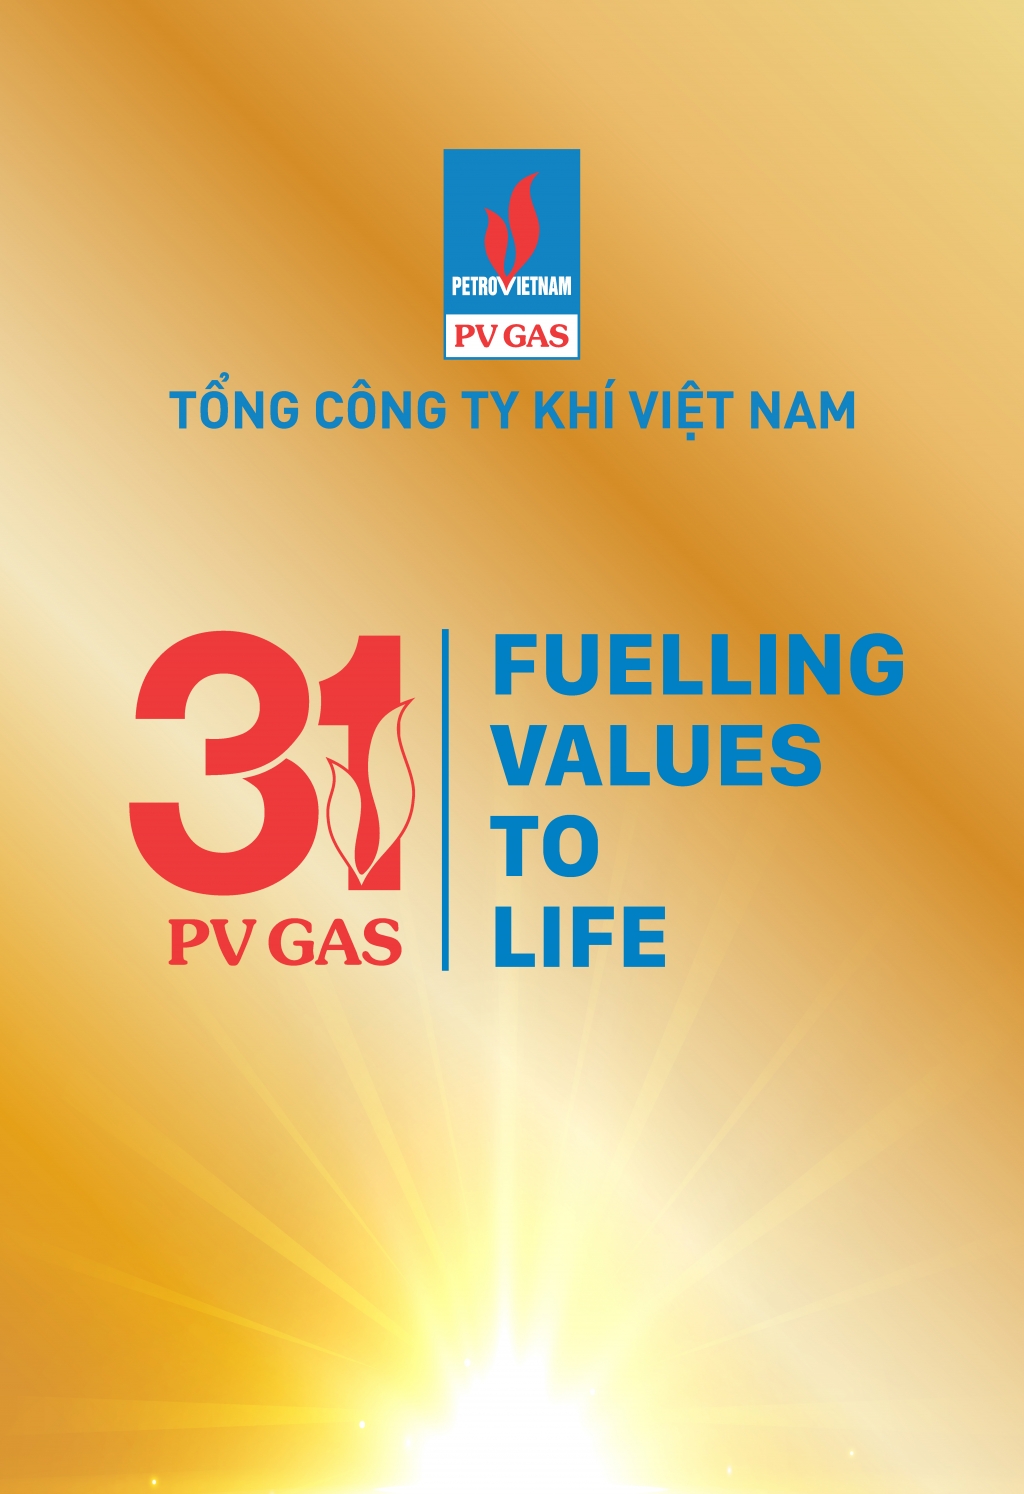 PV GAS chào mừng 31 năm thành lập bằng hành động quyết chiến với đại dịch